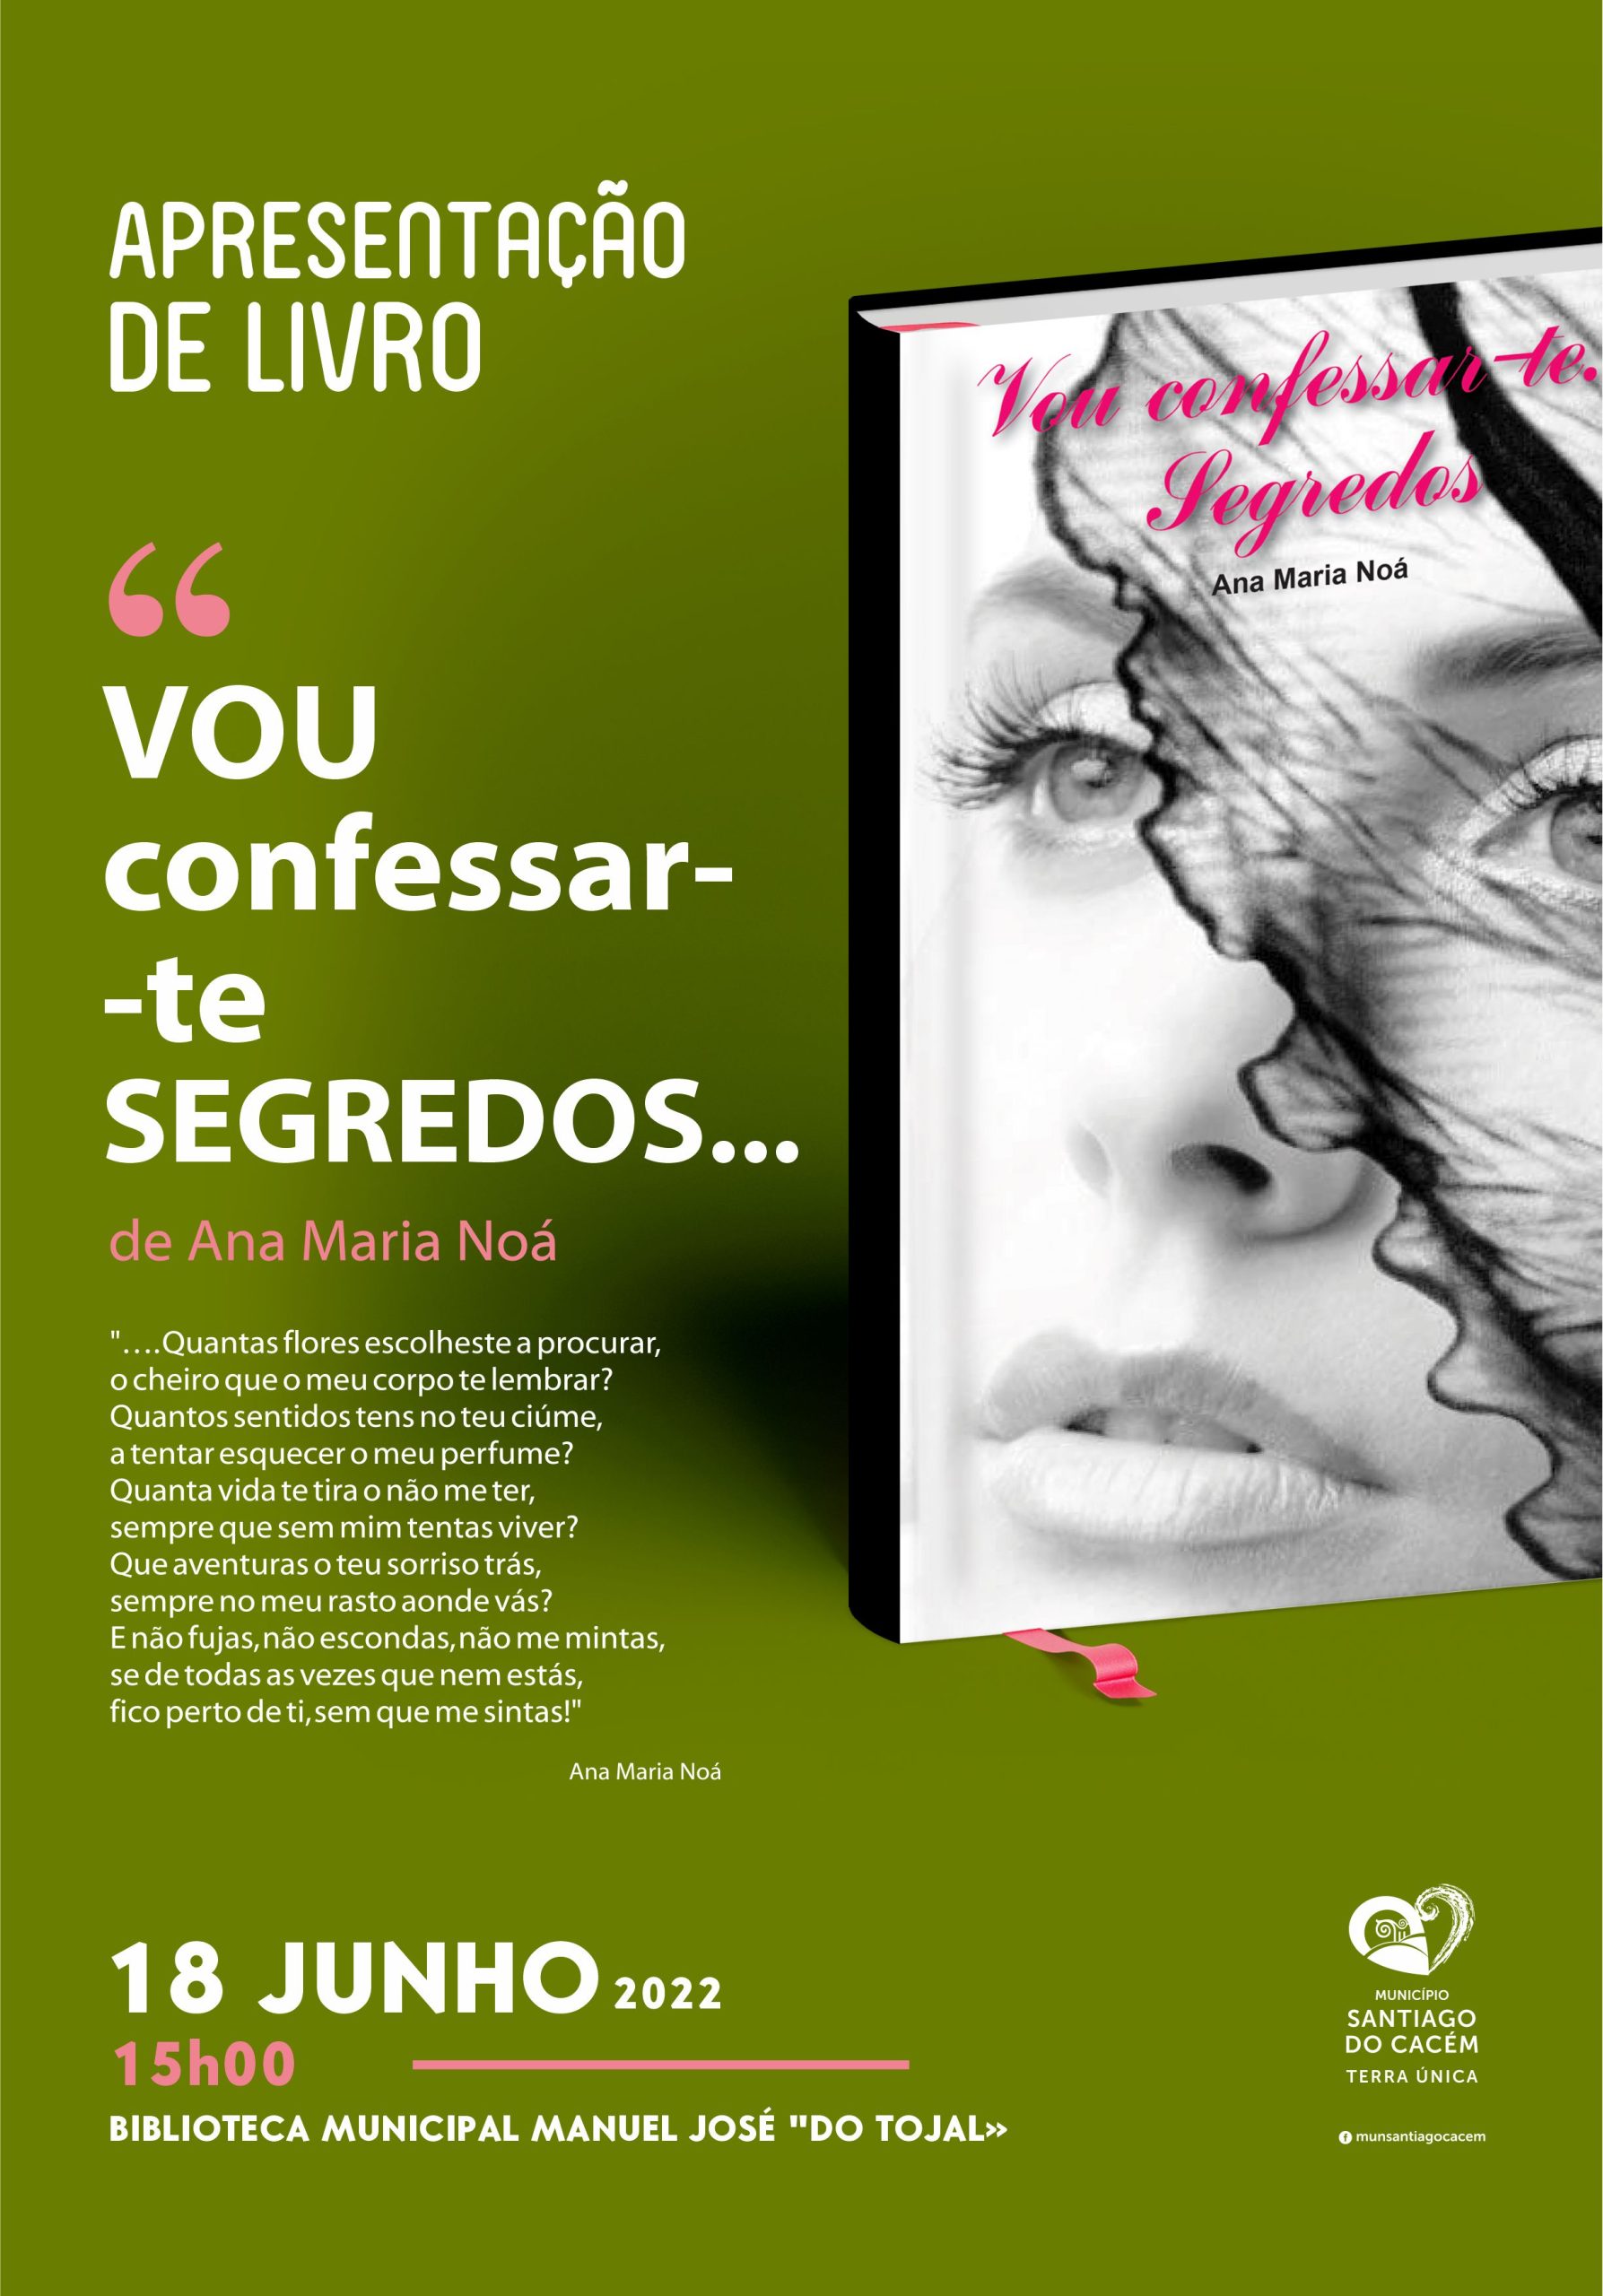 Apresentação do livro “Vou confessar-te segredos”